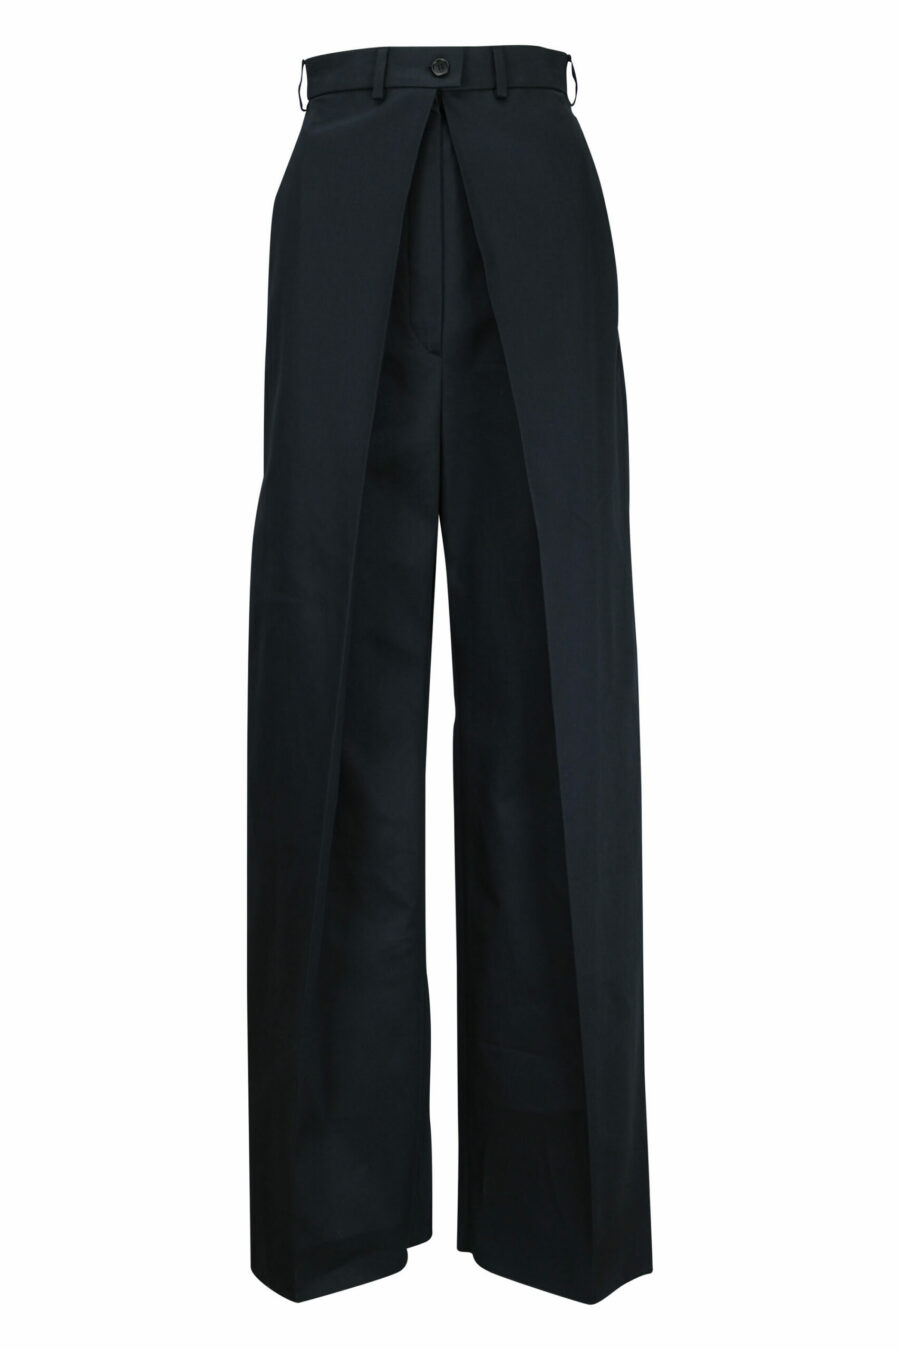 Pantalón negro de capas ancho - 21310841060032 scaled